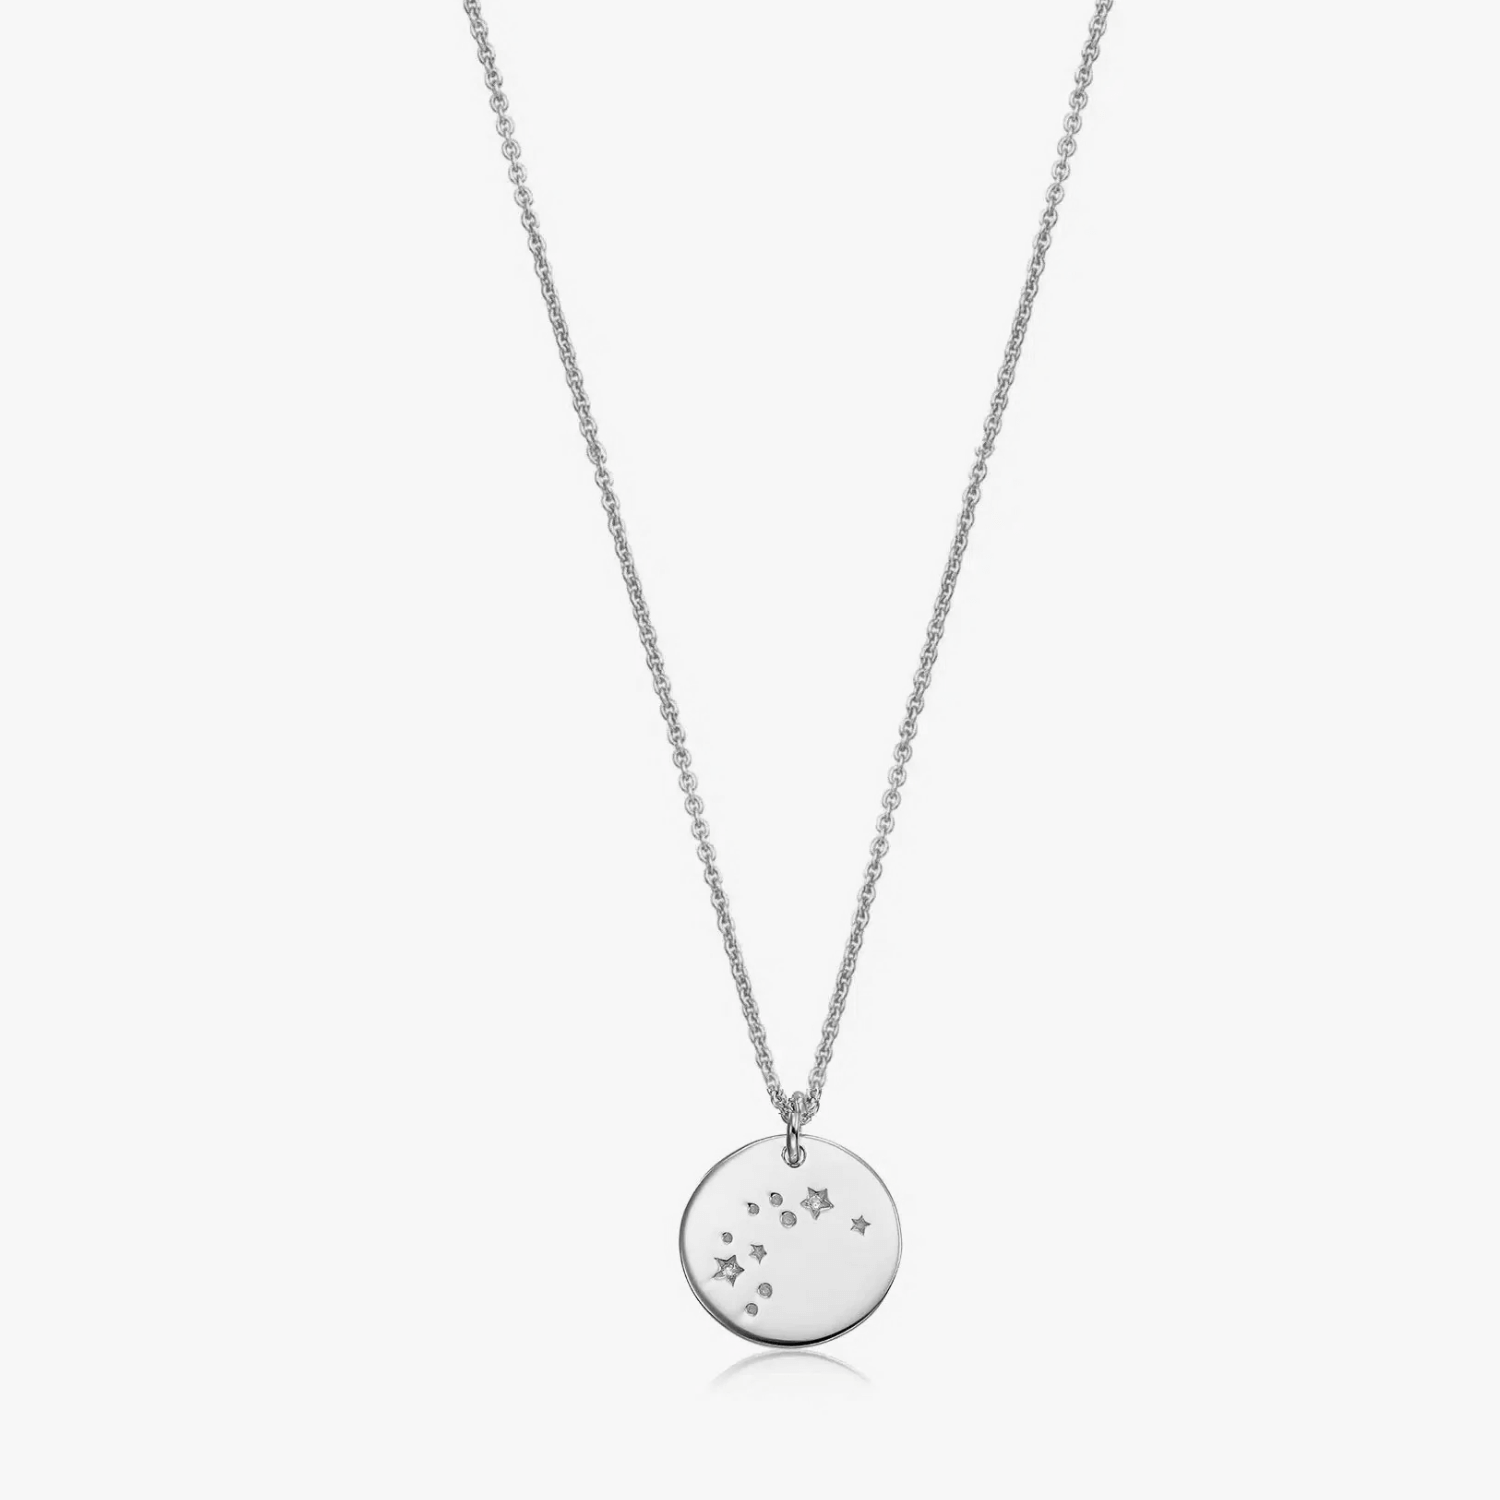 Silver Zodiac - Aquarius necklace